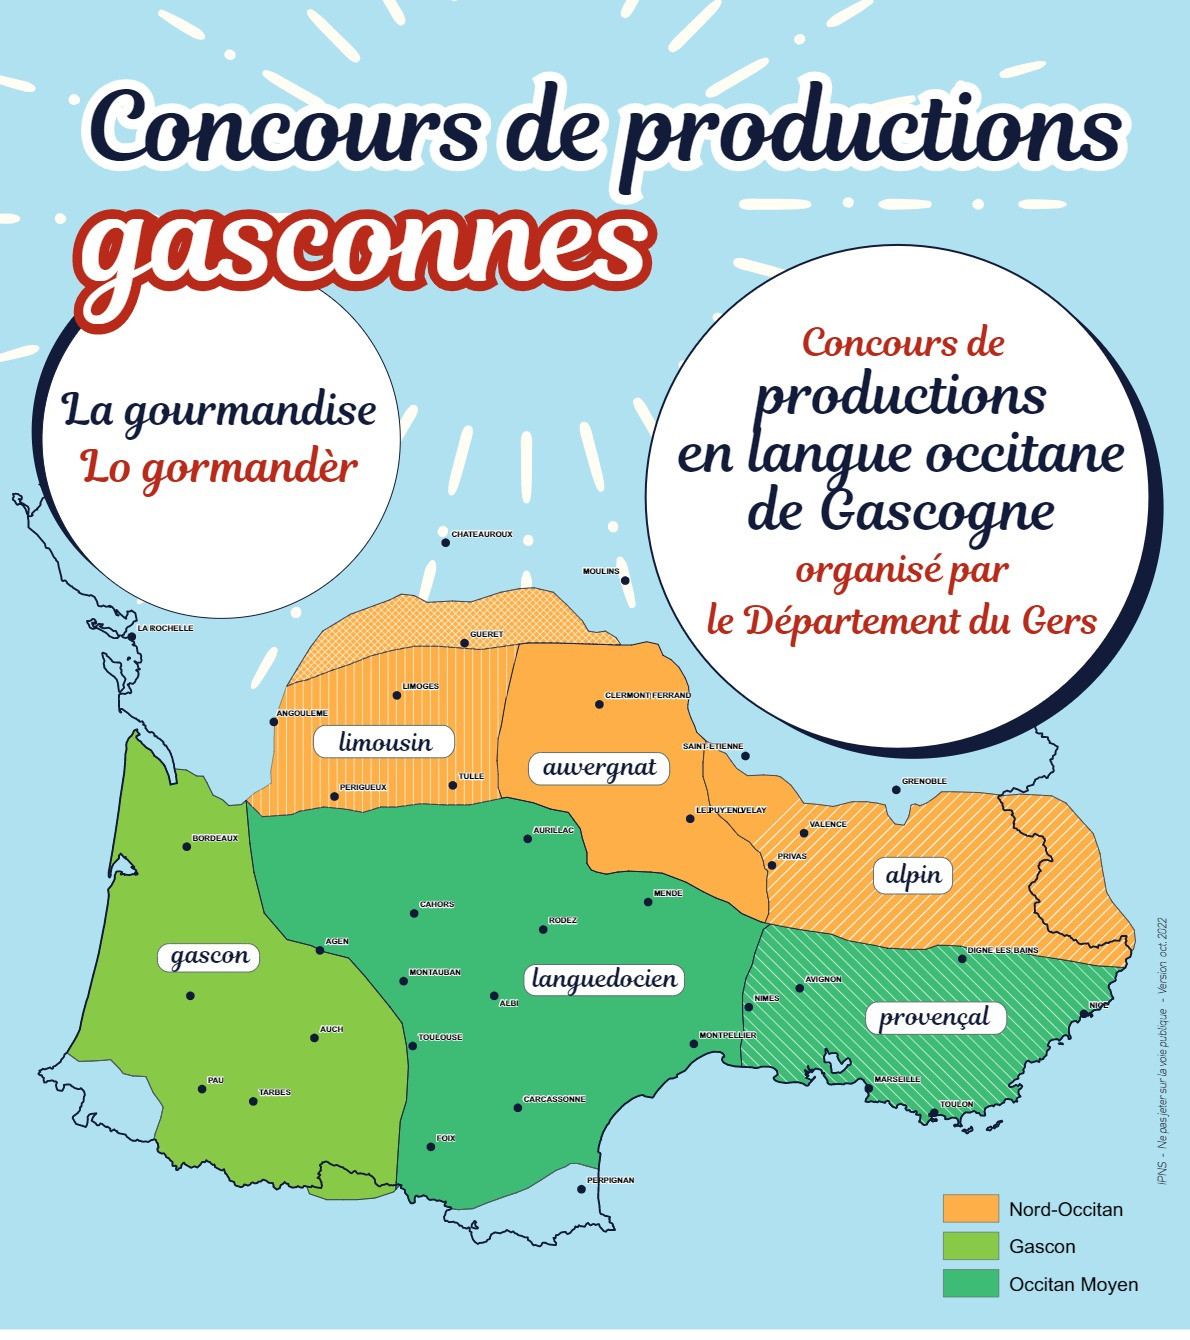 Concours de production gasconnes